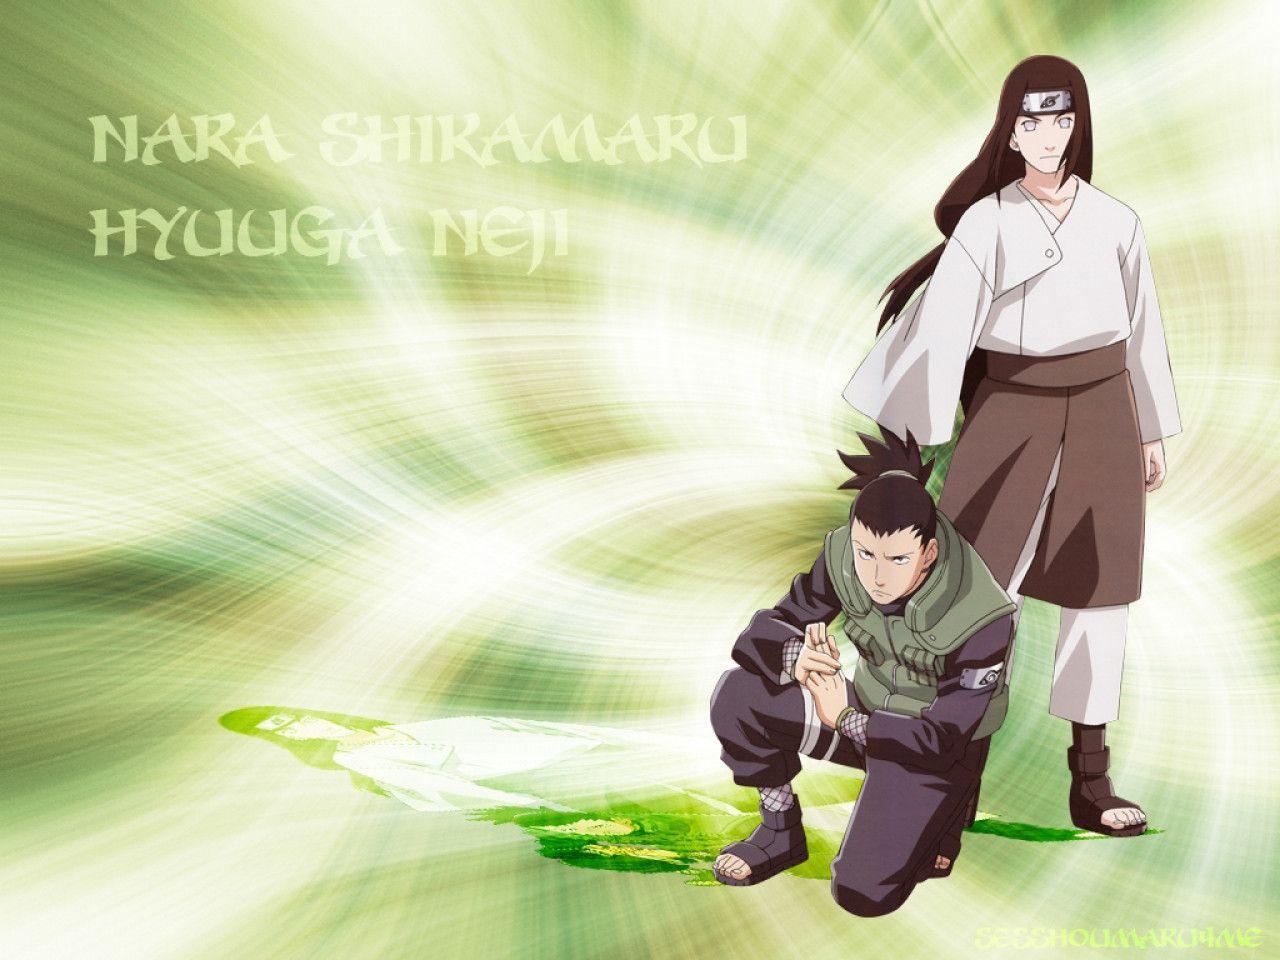 Naruto Shikamaru Wallpaper